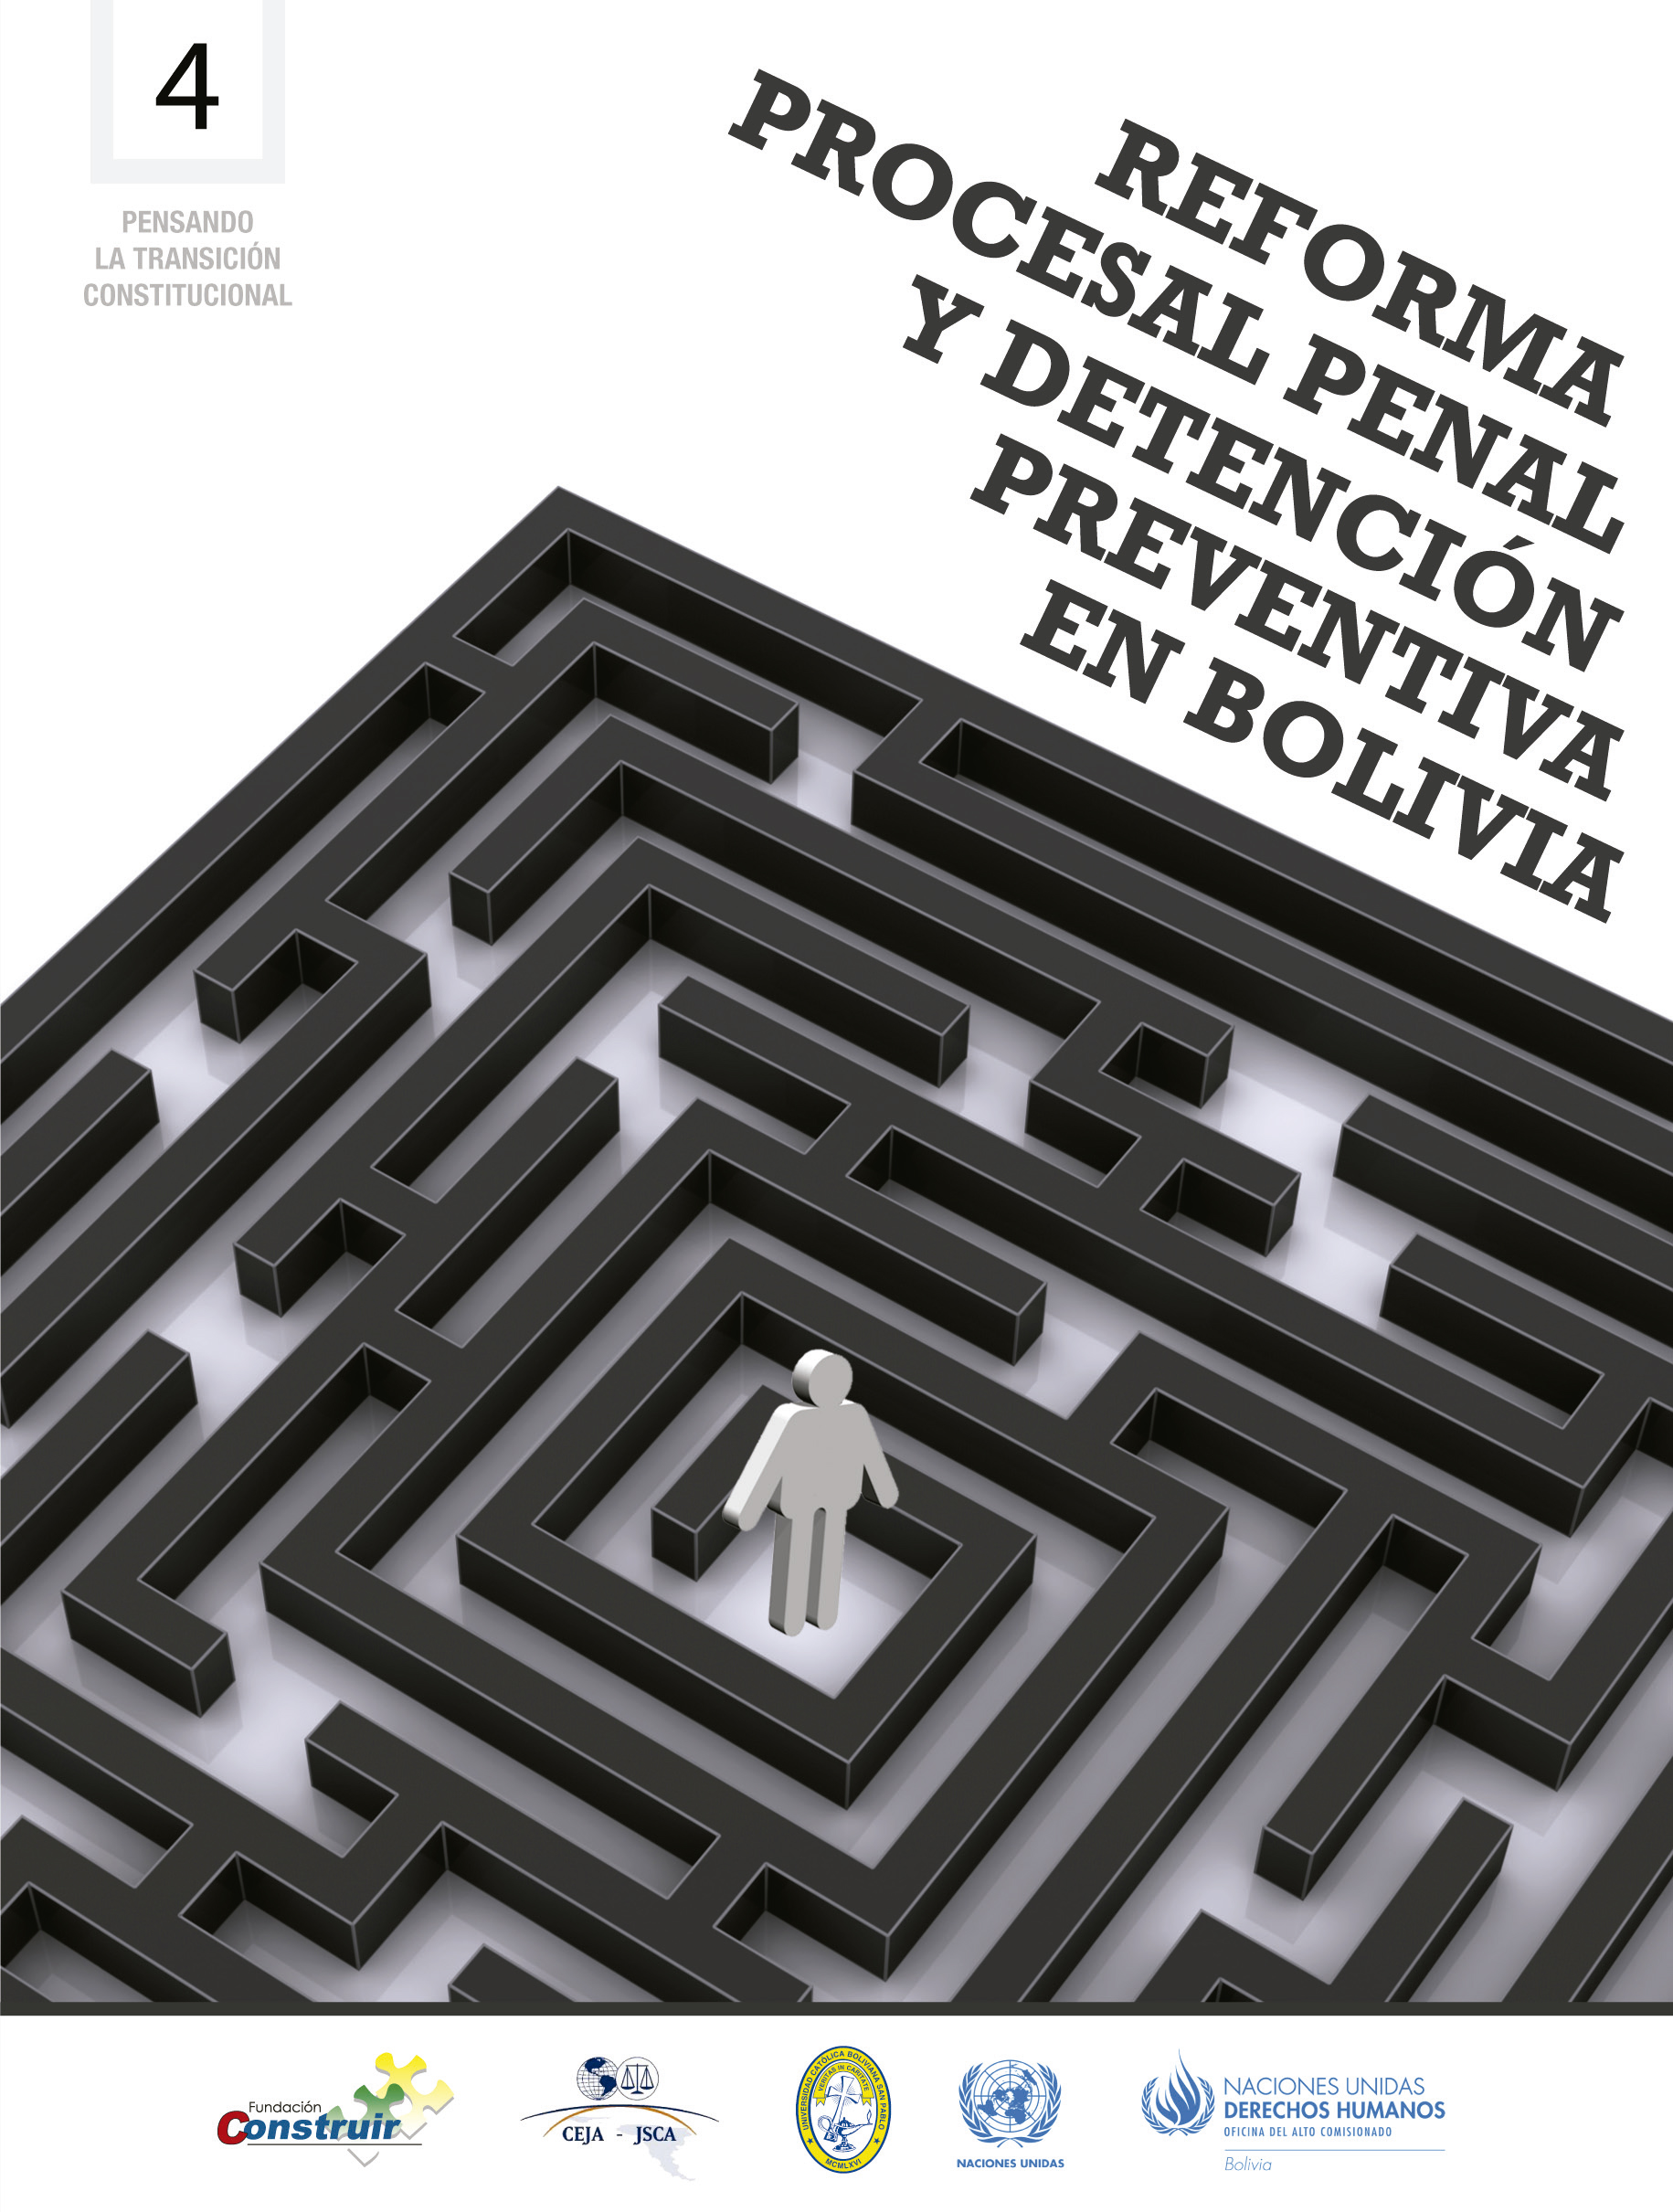 Reforma Procesal Penal y Detención Preventiva en Bolivia-1